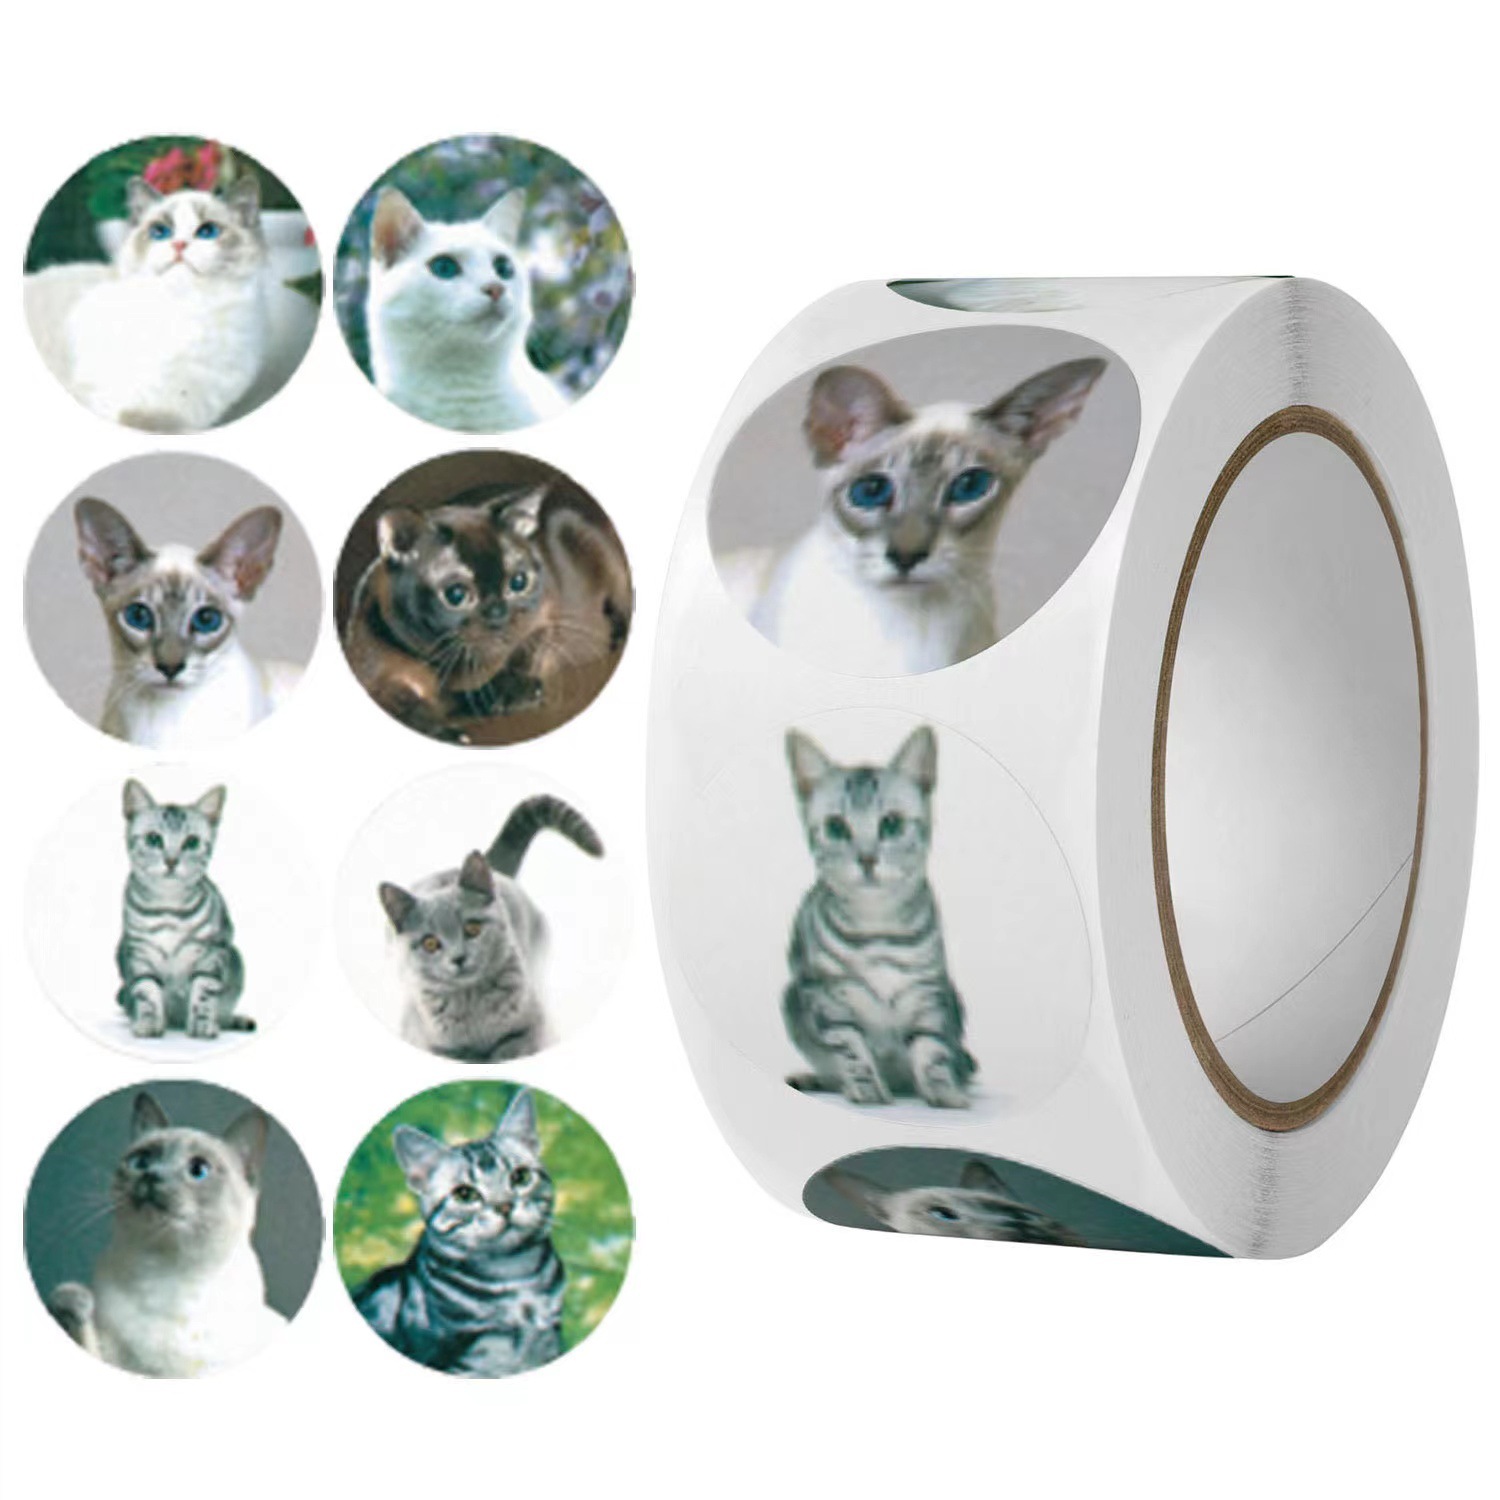 කර්මාන්තශාලා සෘජු OEM 500 කෑලි රෝල් 1 අඟල් හුරුබුහුටි Cat Shipping Box Stickers for Business